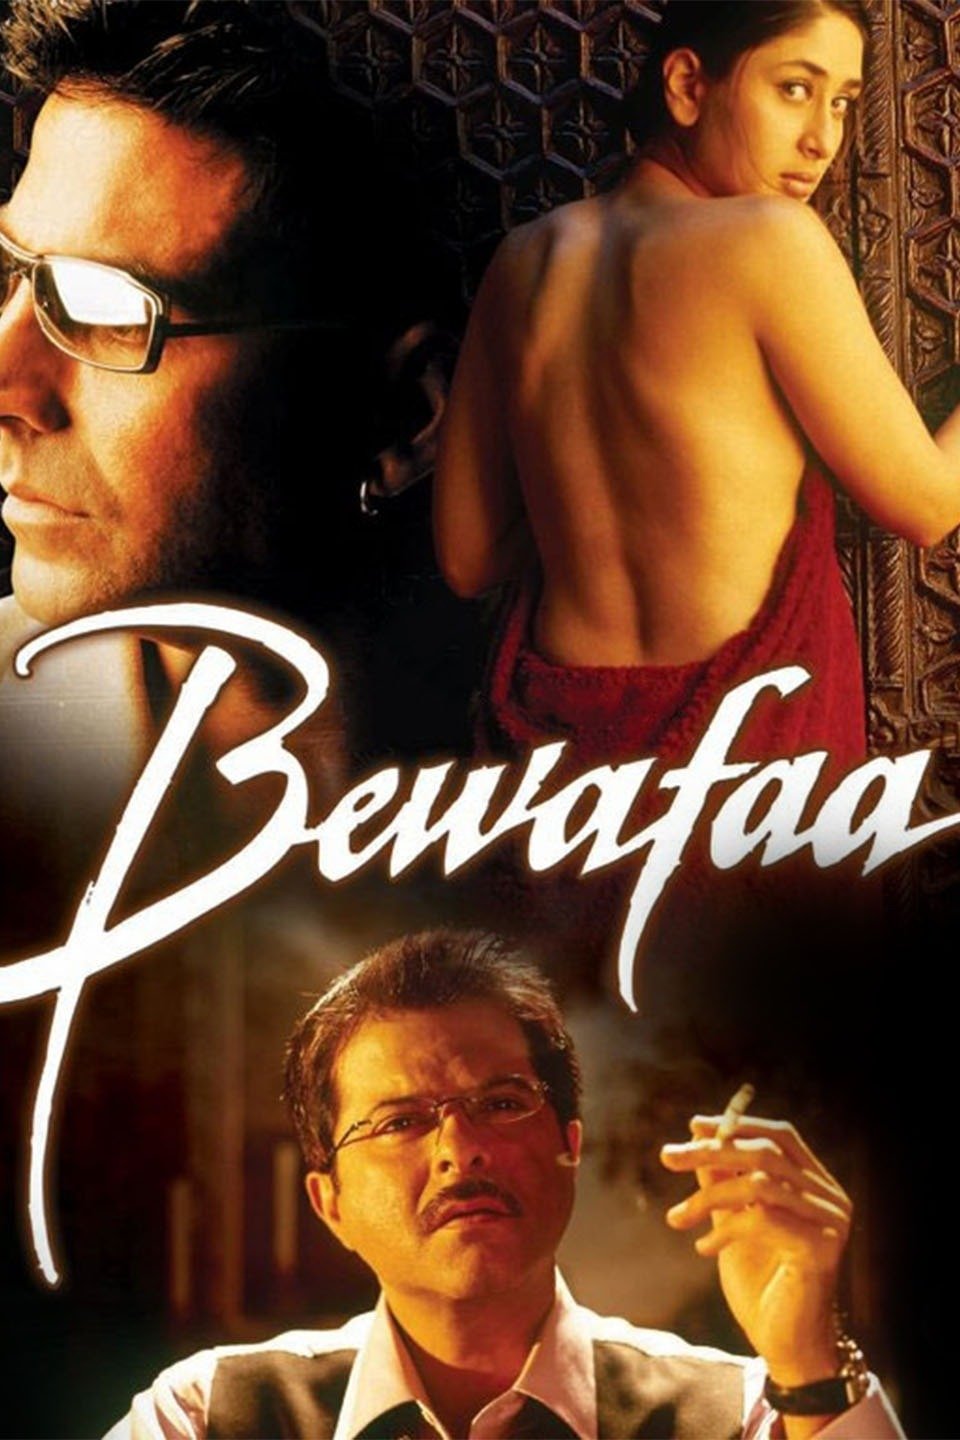 bewafaa 2005 full movie